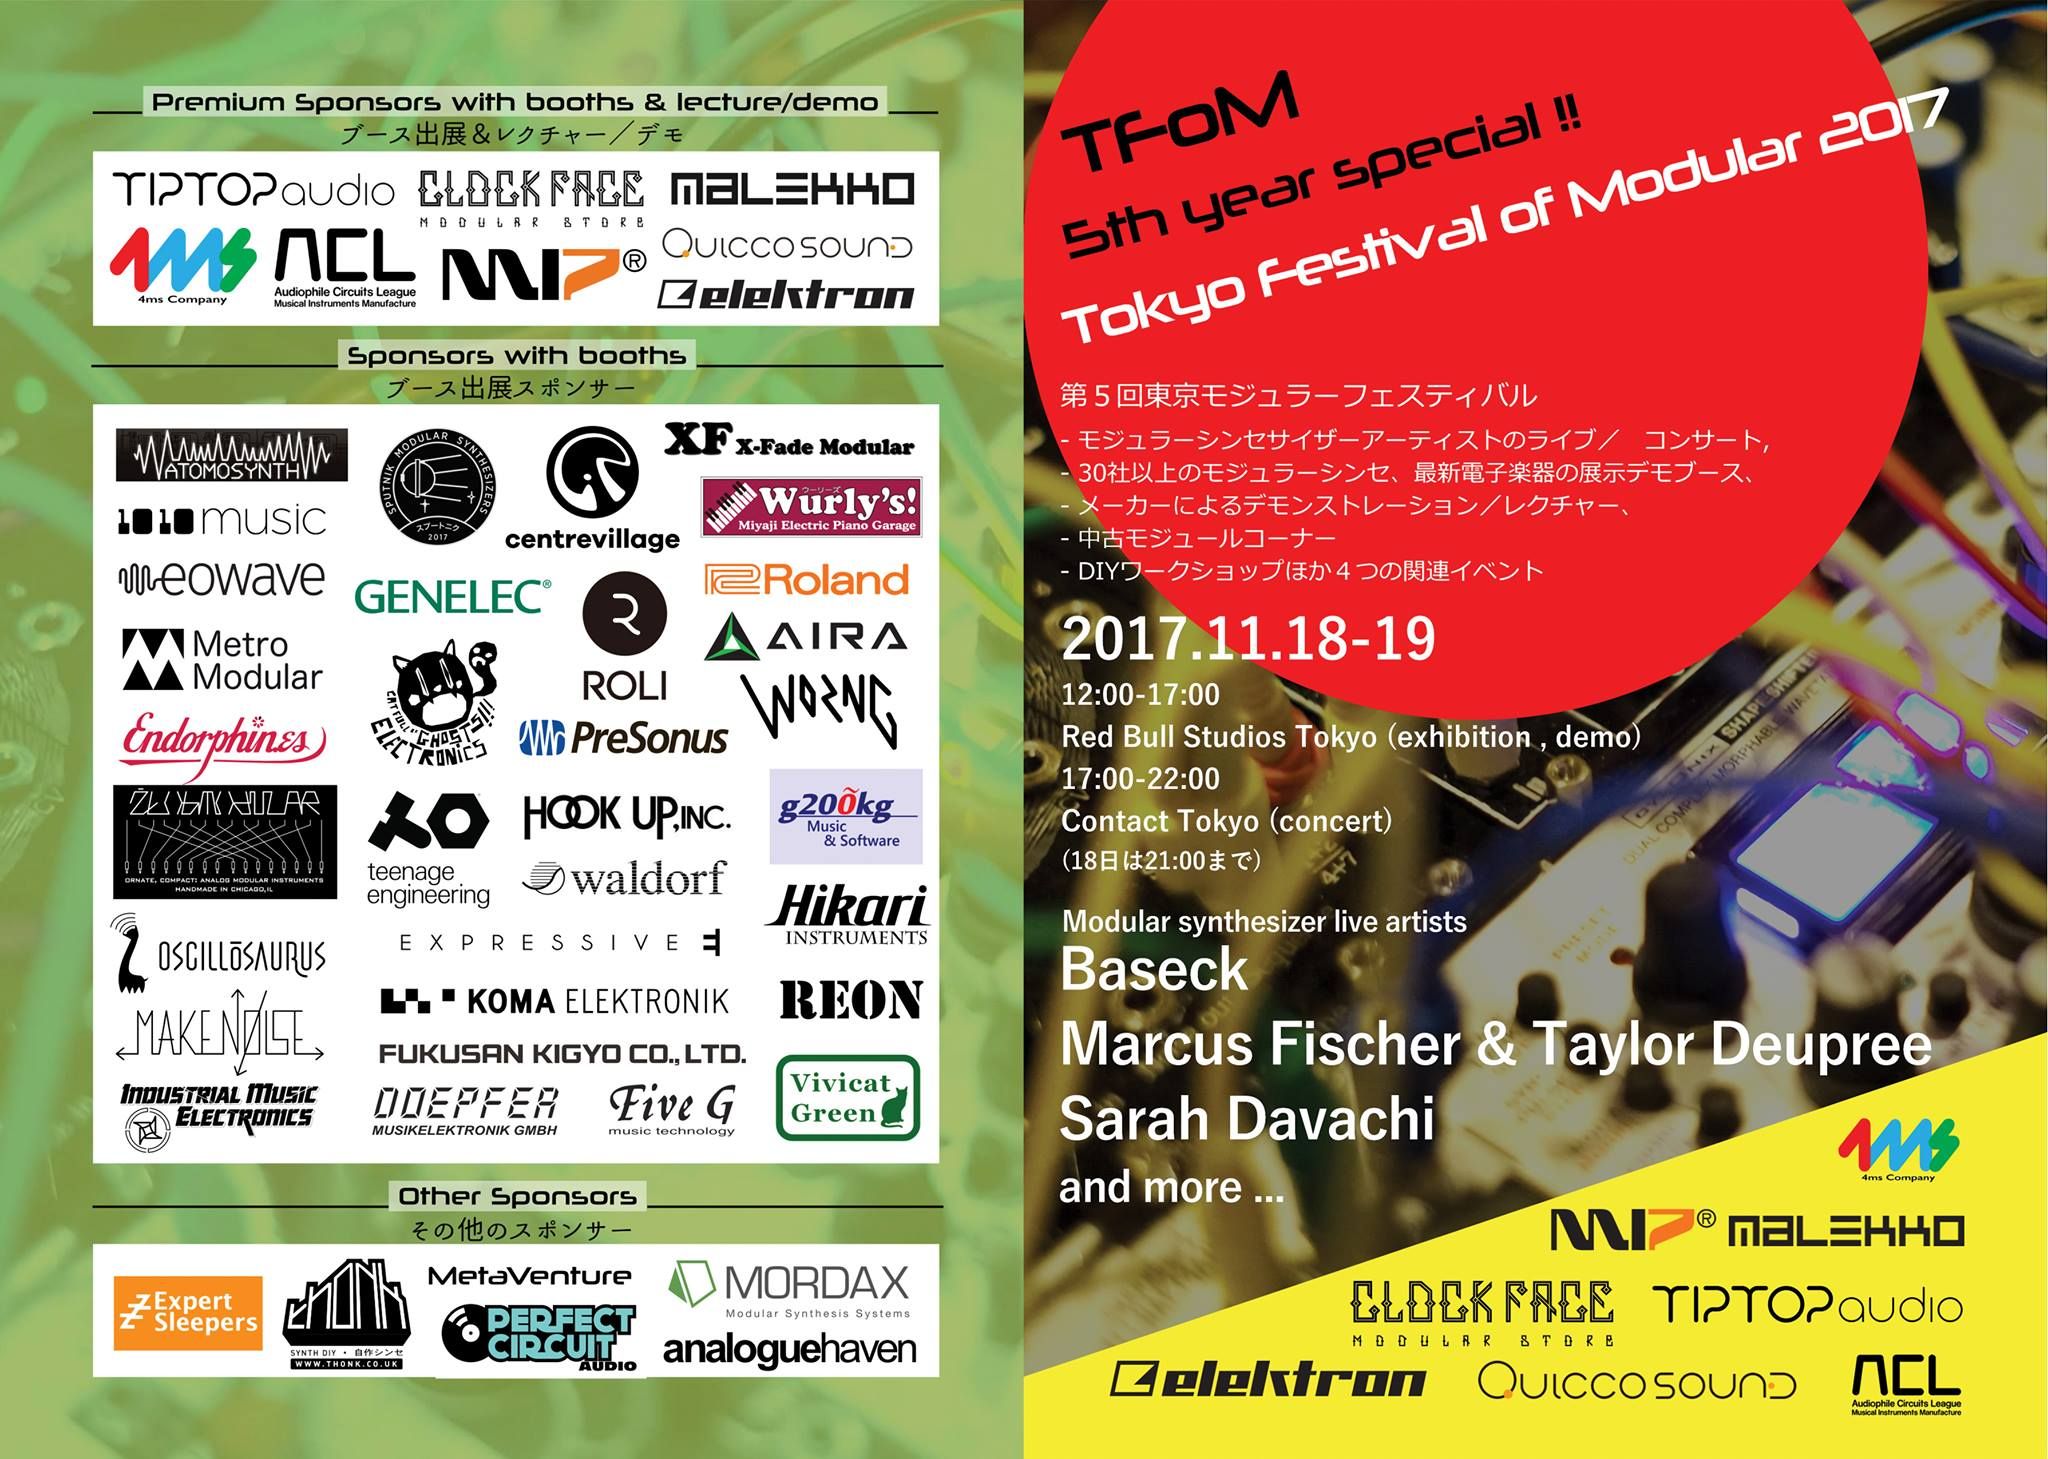 Tokyo Festival of Modular 2017 exhibition